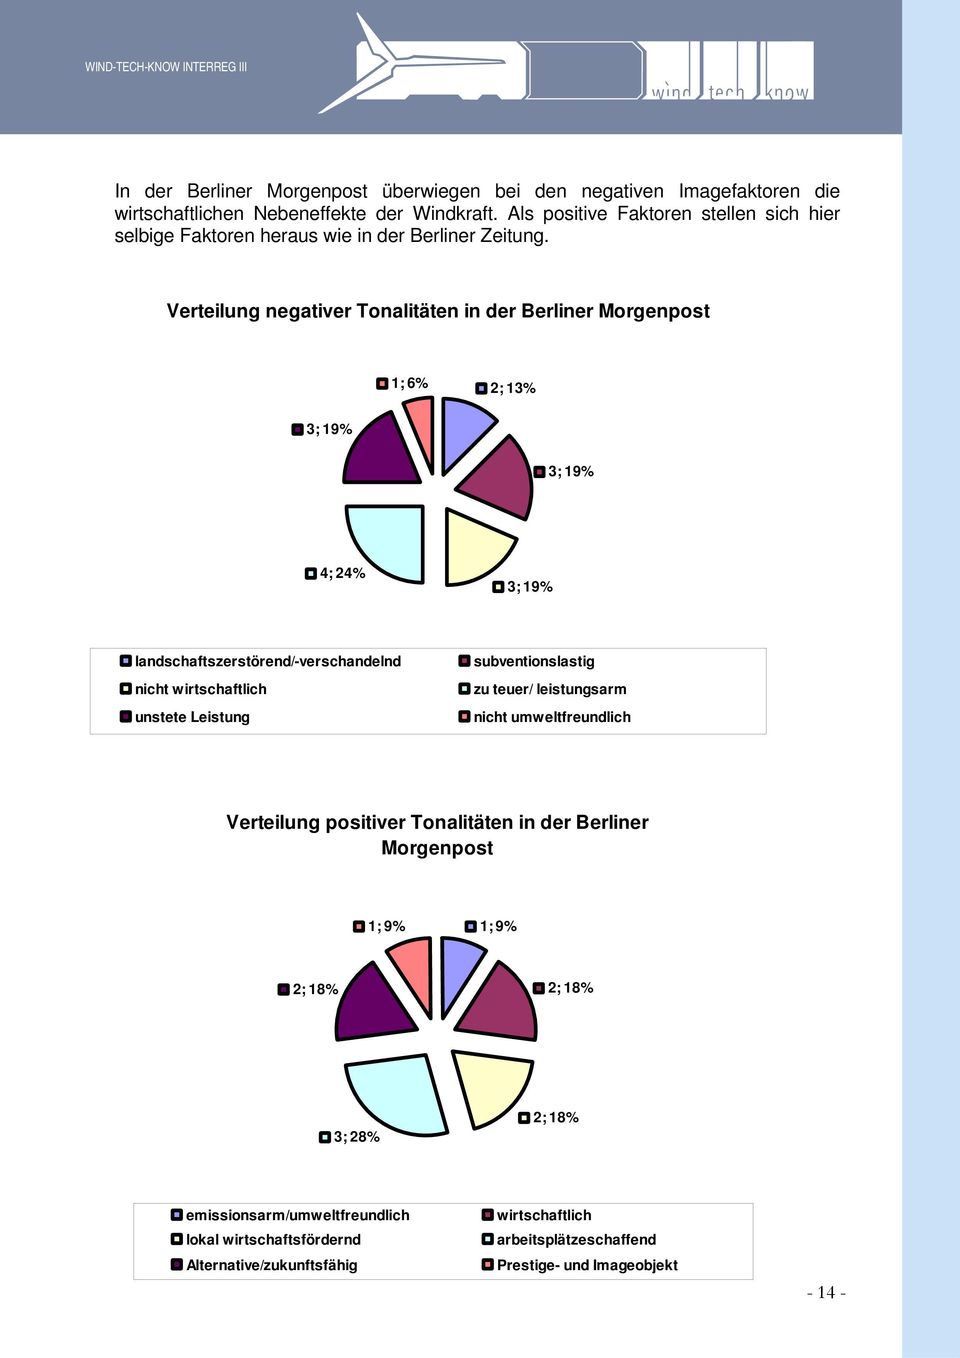 Verteilung negativer Tonalitäten in der Berliner Morgenpost 1; 6% 2; 13% 3; 19% 3; 19% 4; 24% 3; 19% landschaftszerstörend/-verschandelnd nicht wirtschaftlich unstete Leistung